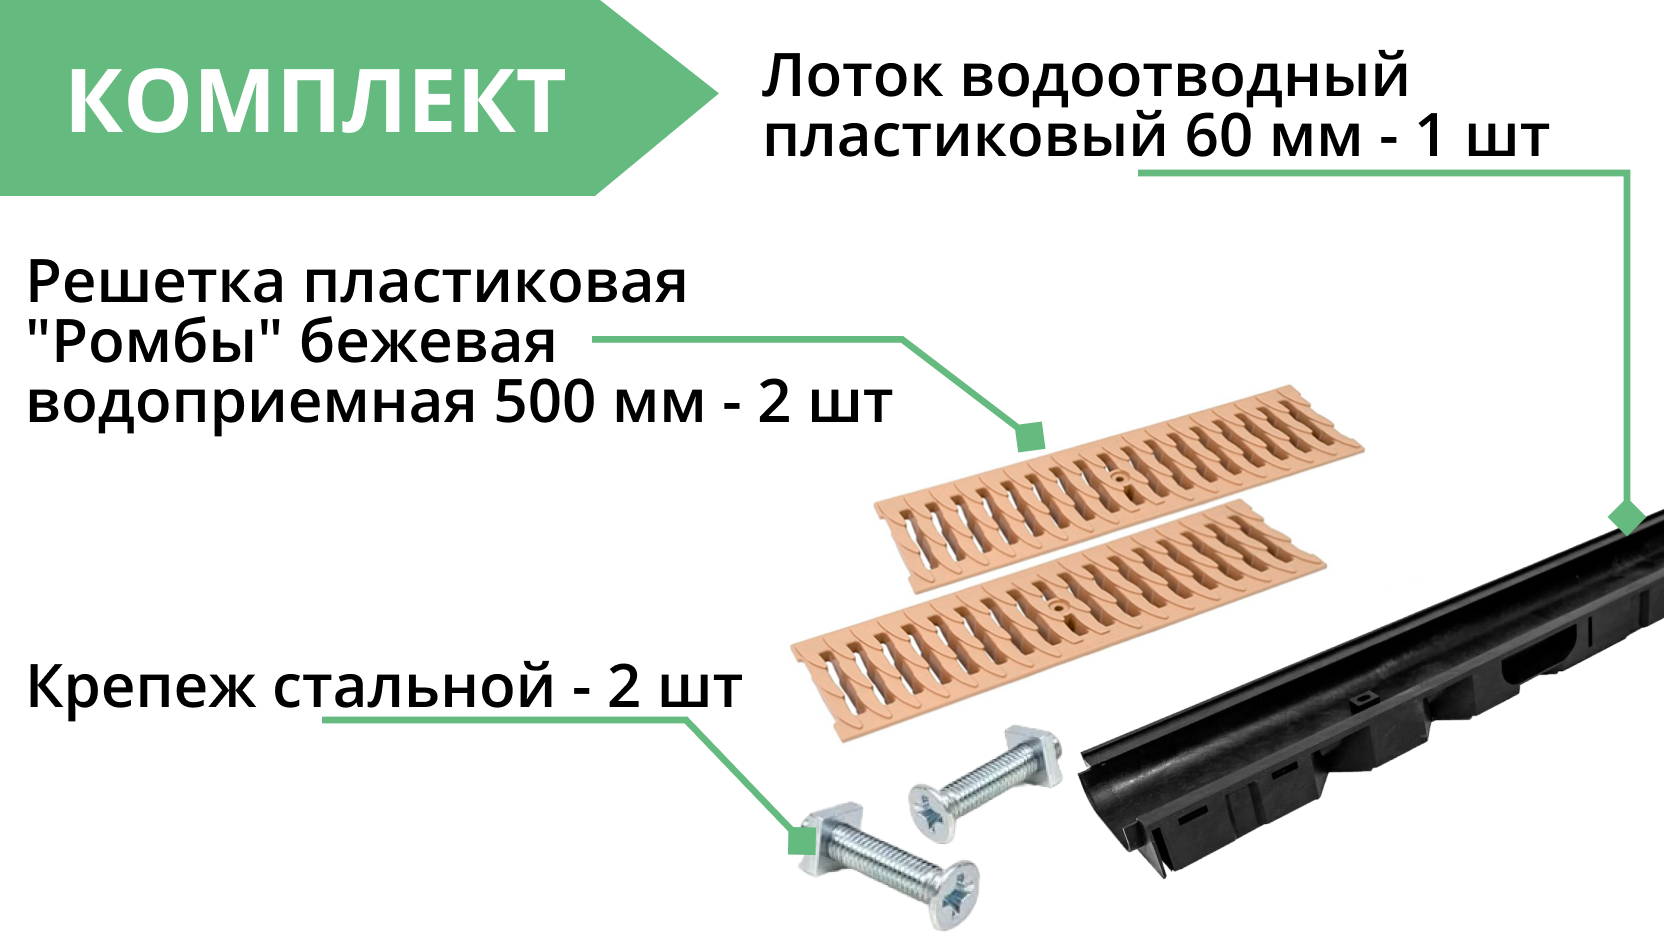 Комплект: Лоток Европартнер 60 мм с пластиковыми решетками бежевыми "Ромбы" 1 метр 3